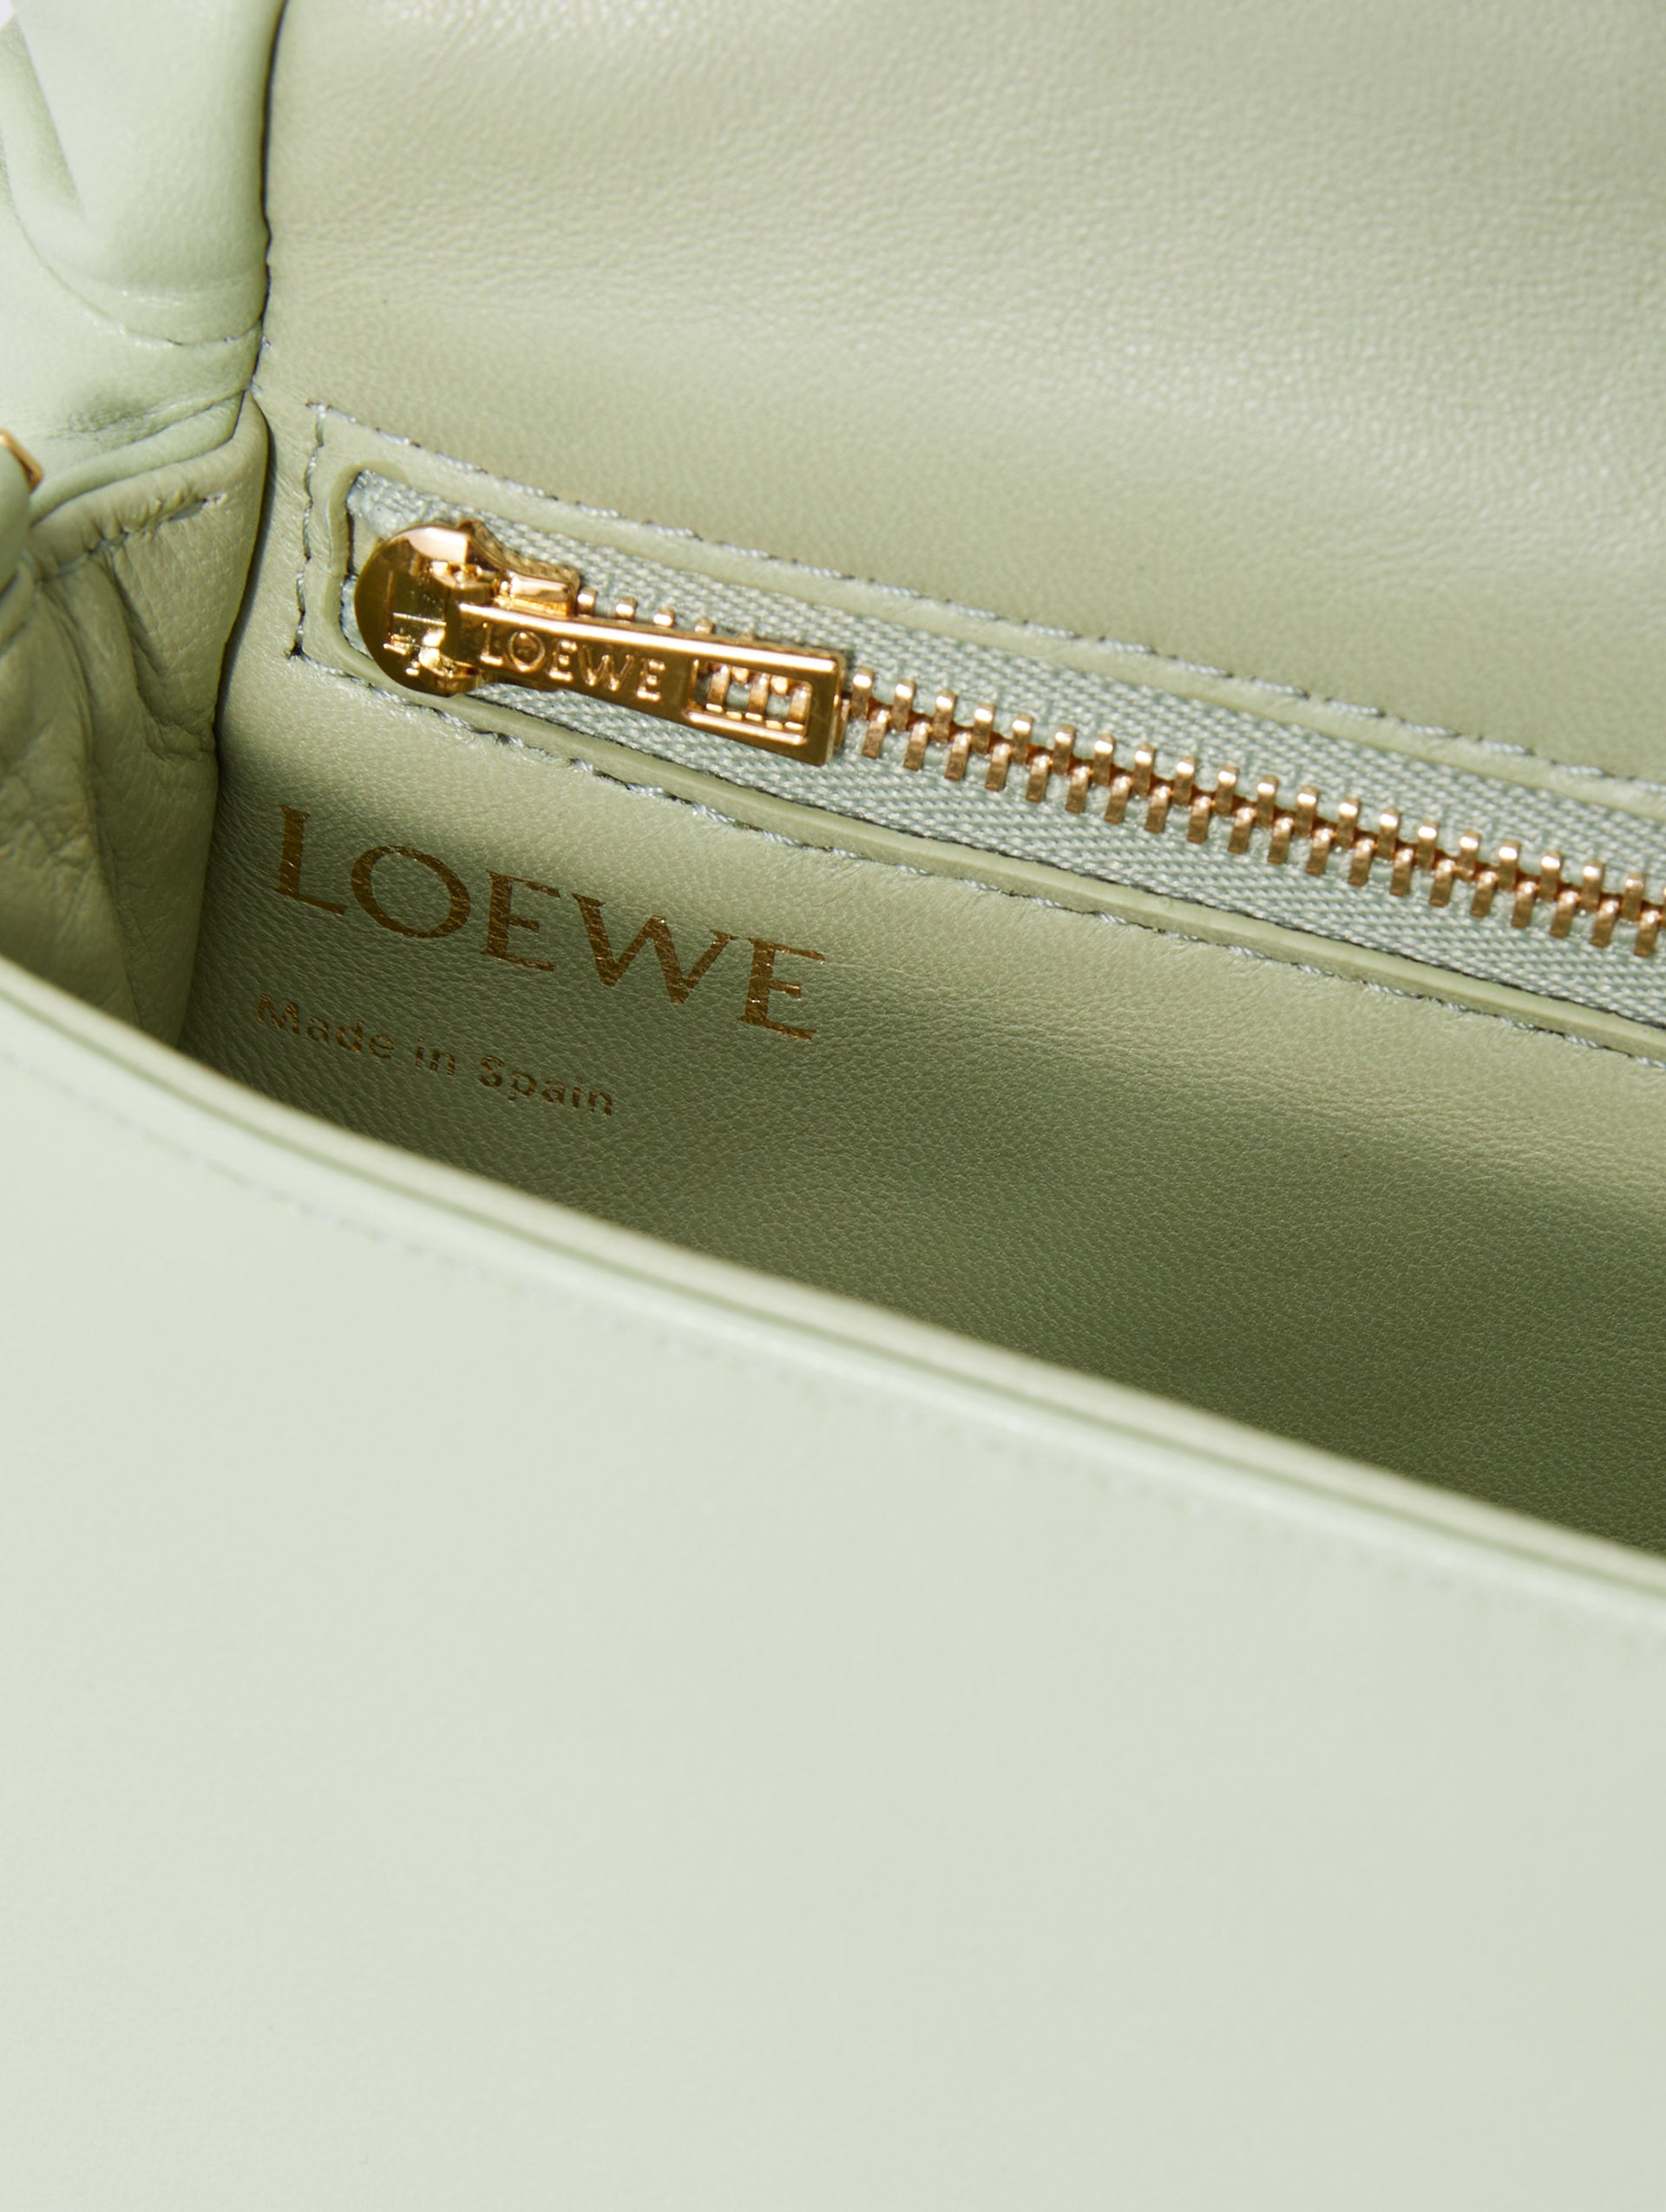 Buy Loewe Goya Puffer Mini Bag 'Lime Green' - A896W56X01 4280